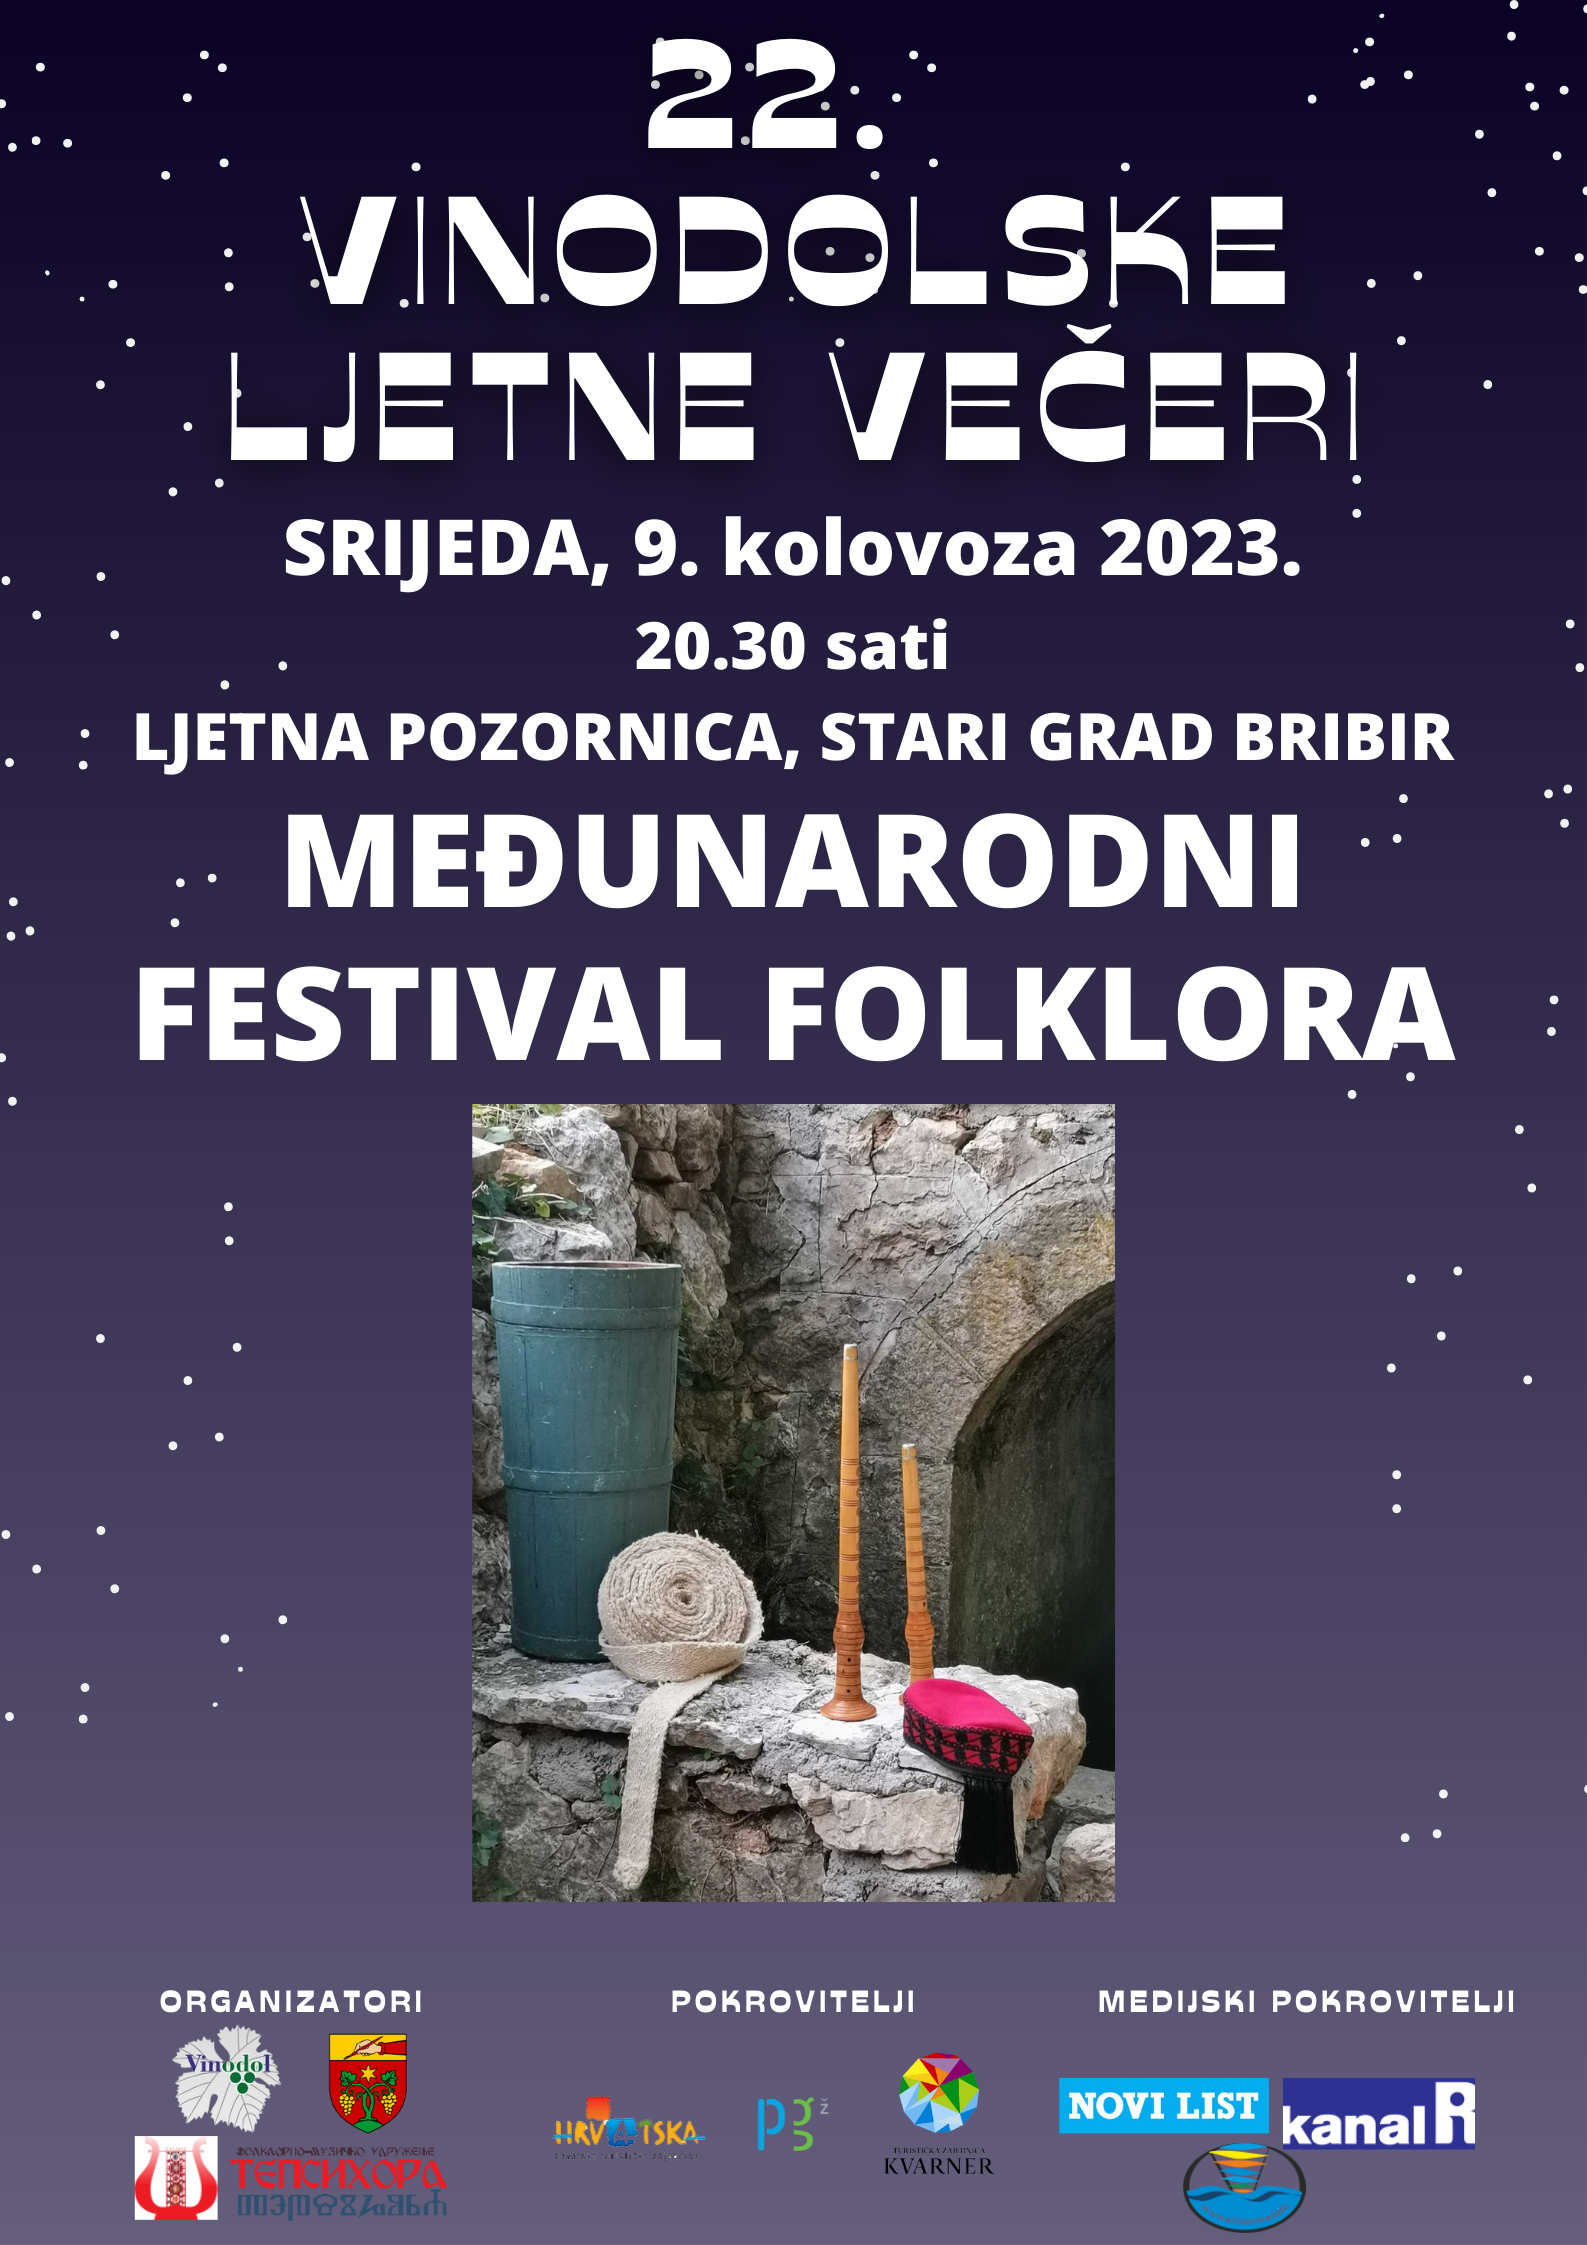 22. VINODOLSKE LJETNE VEČERI Međunarodni festival folklora